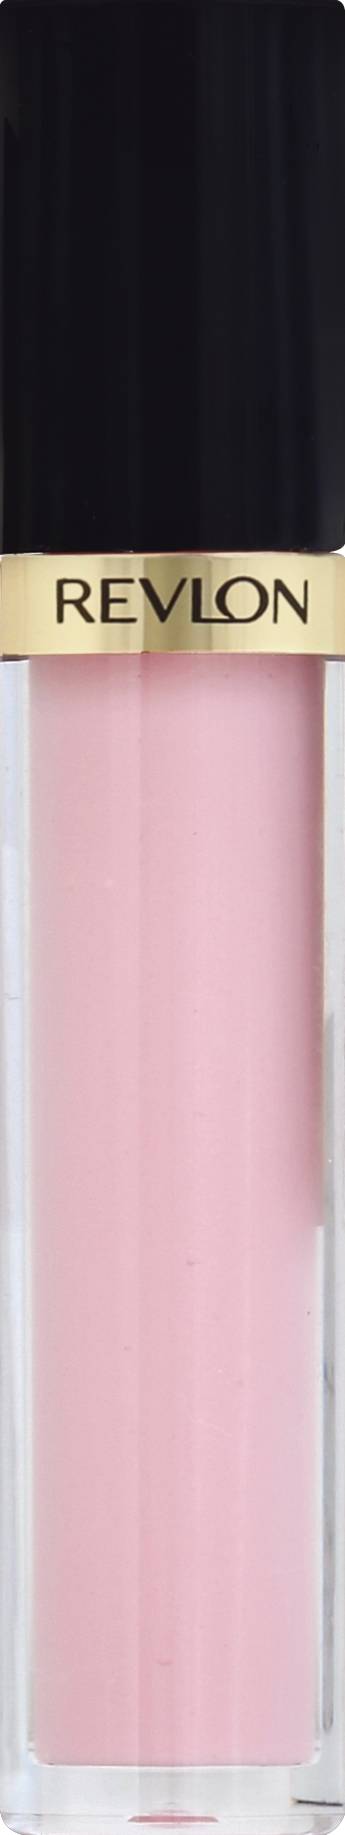 Revlon Super Lustrous Lip Gloss, 207 Sky Pink (1 gloss)